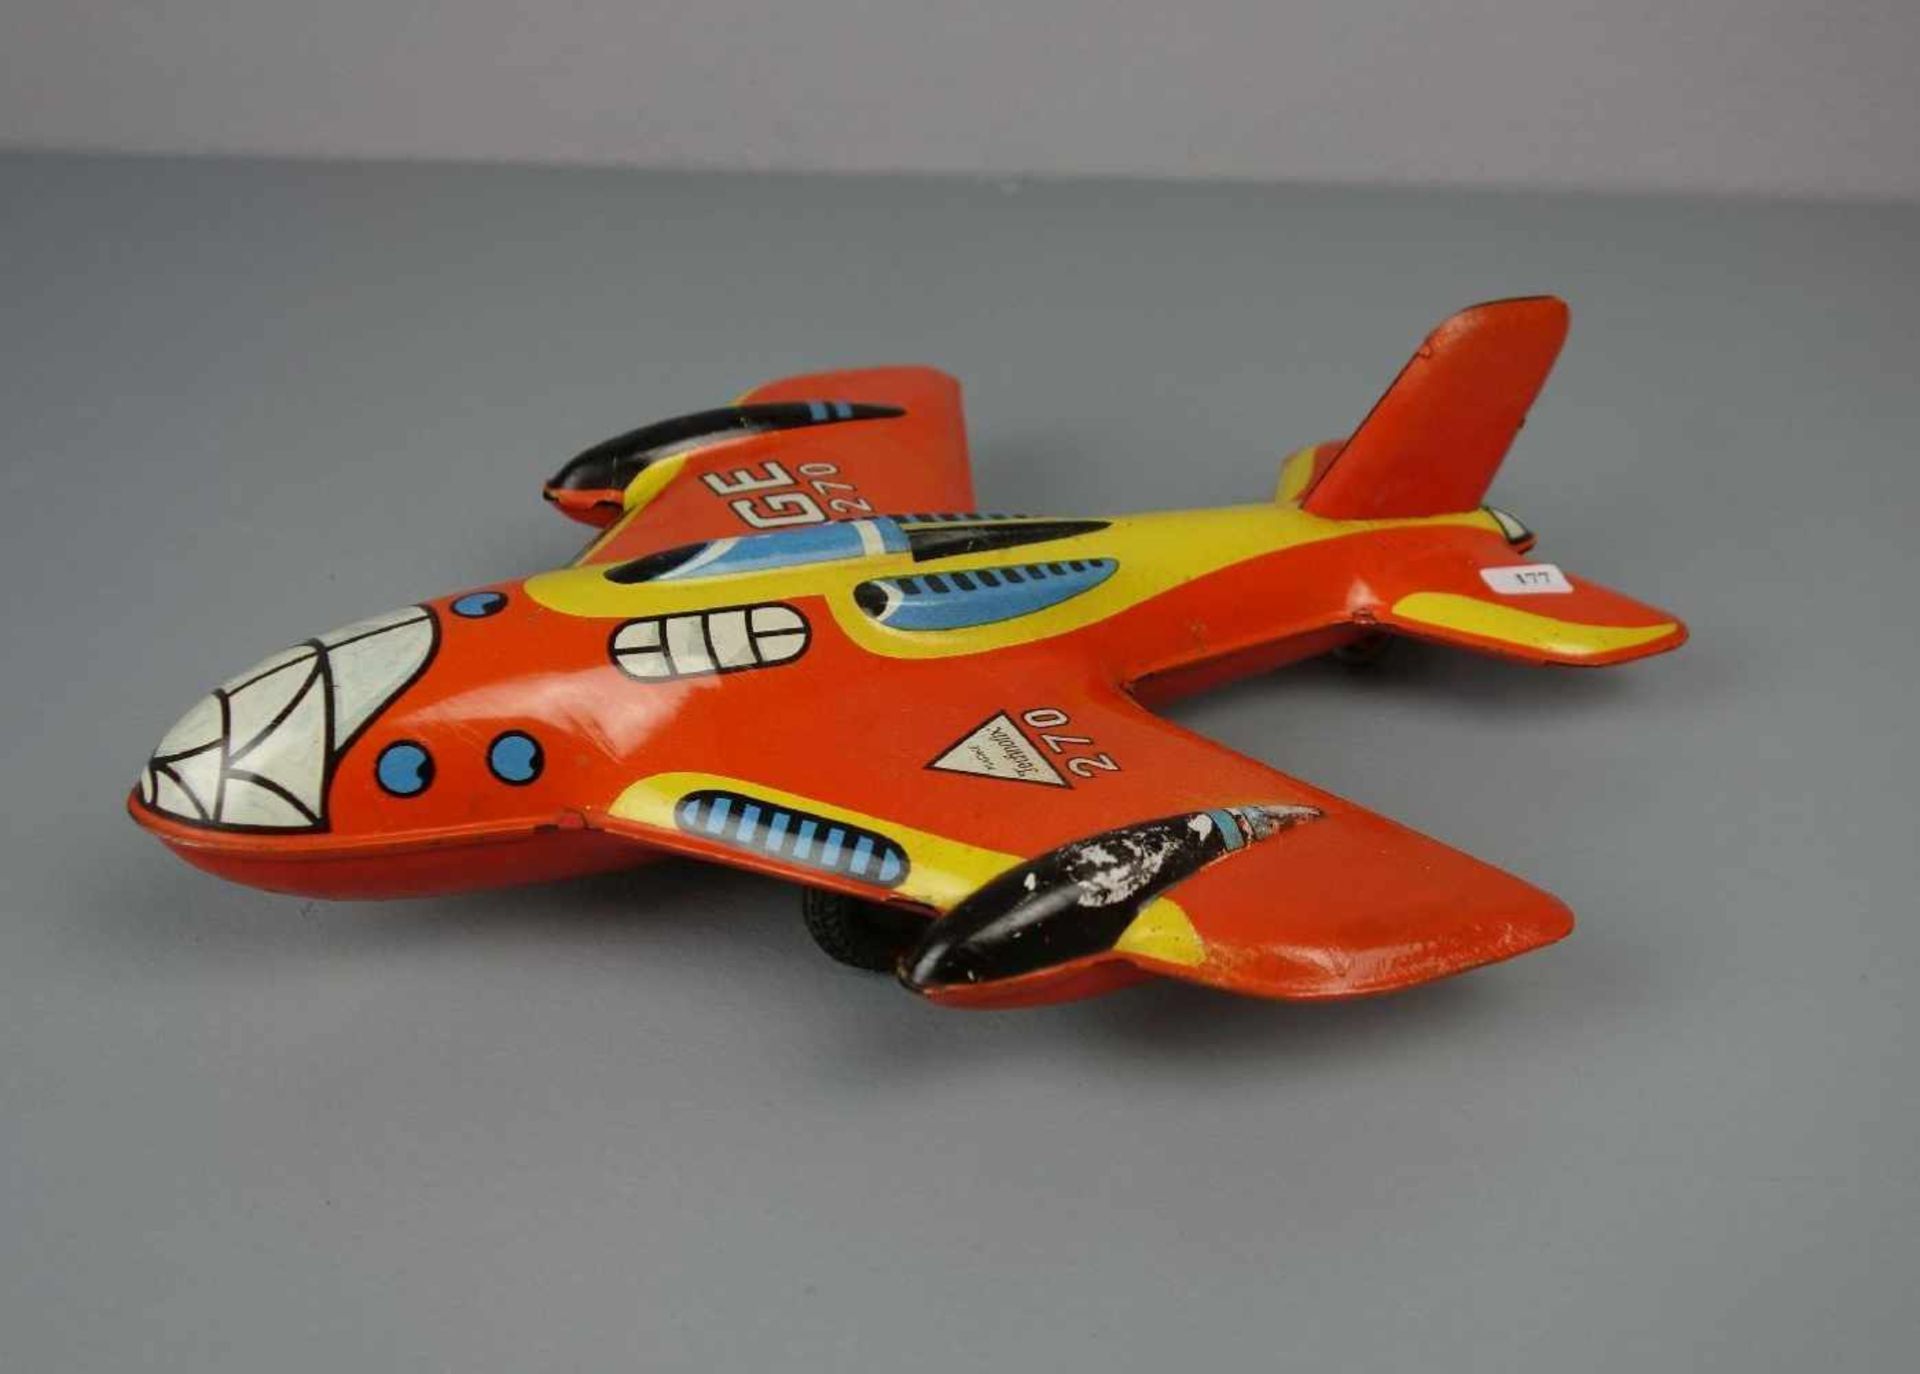 BLECHSPIELZEUG: TECHNOFIX FLUGZEUG / tin toy plane, Mitte 20. Jh., Manufaktur Gebrüder Einfalt